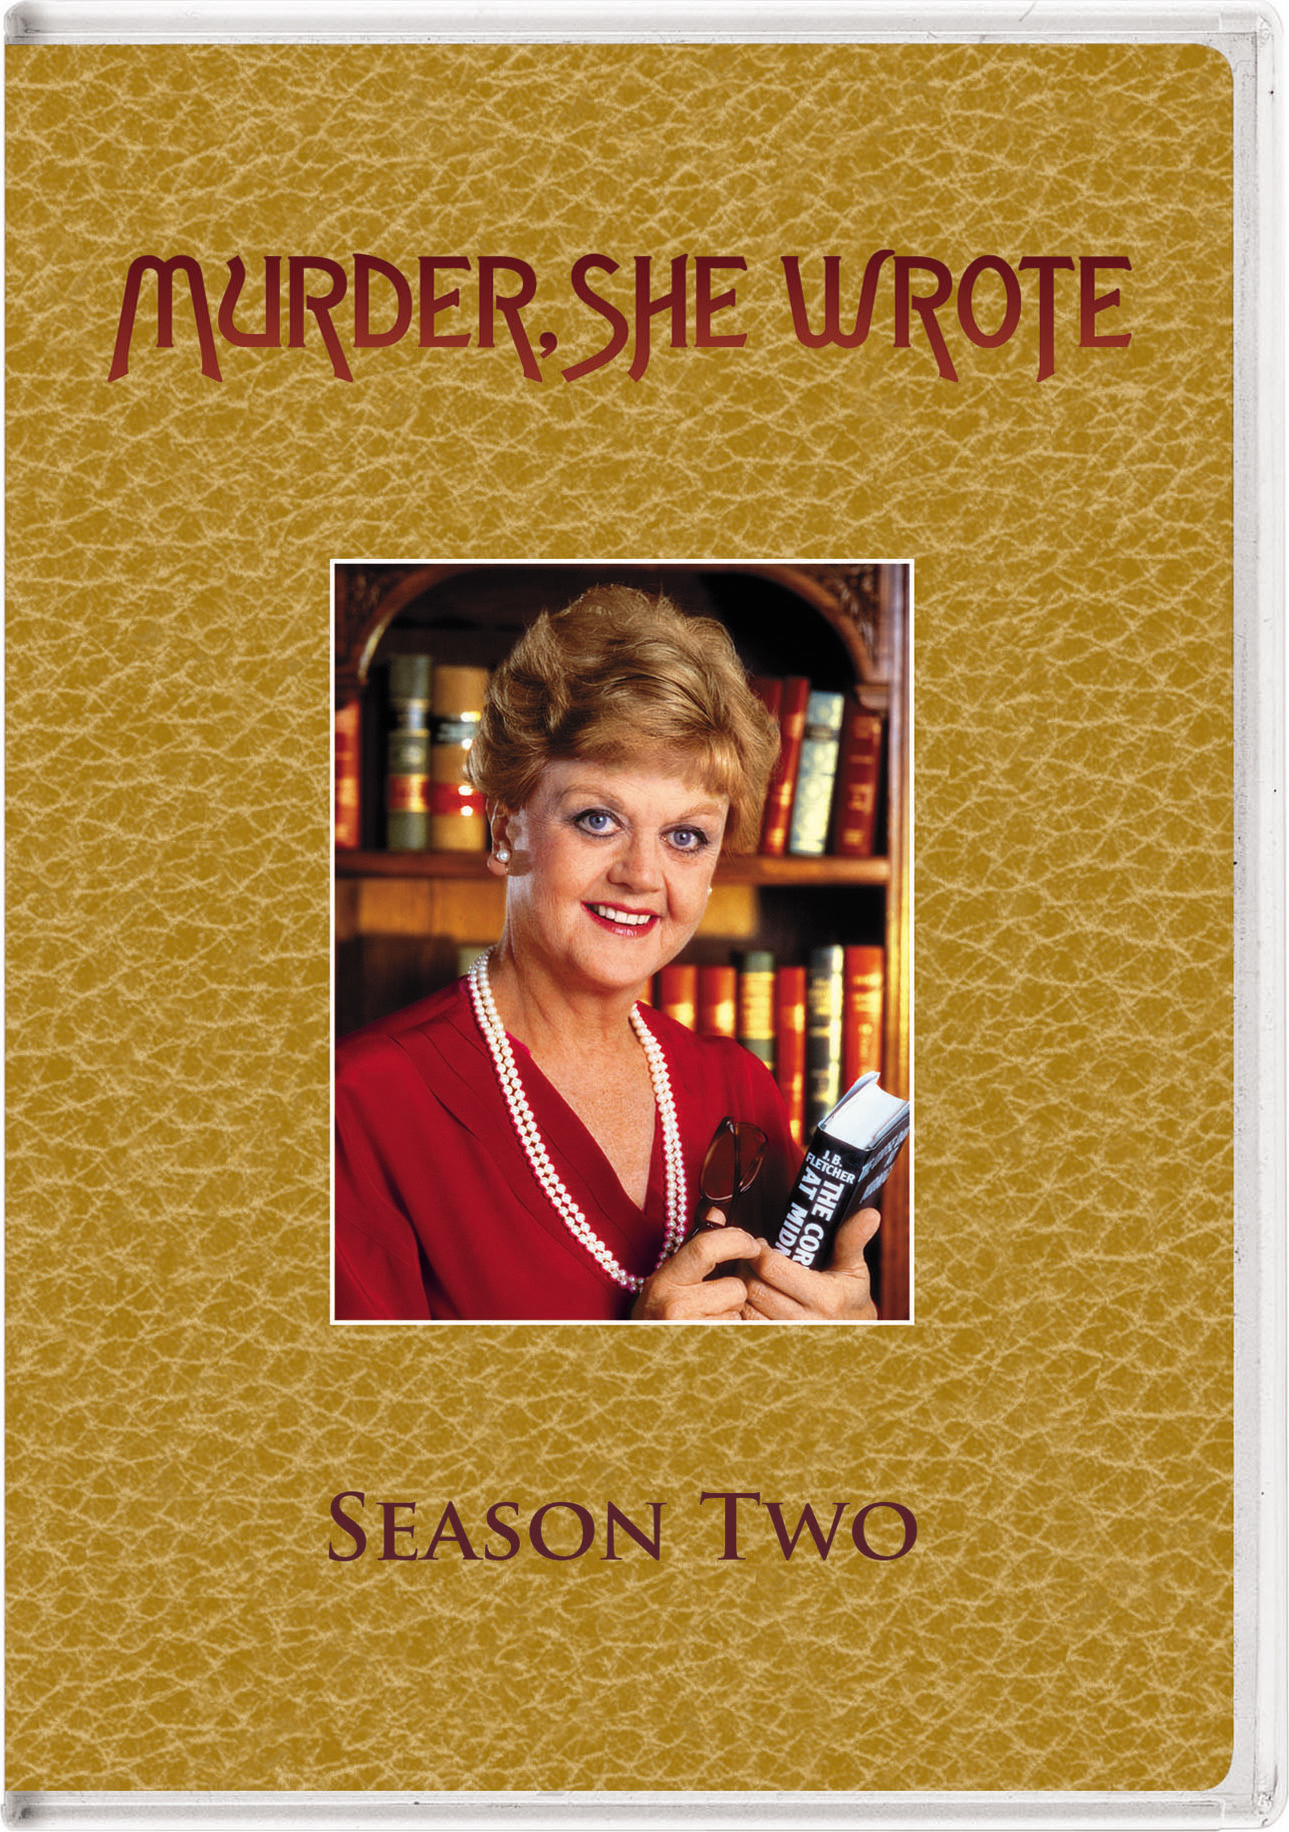 Murder, She Wrote Un Crime 10ª Season Complete 5 DVD New Series (No Open) R2